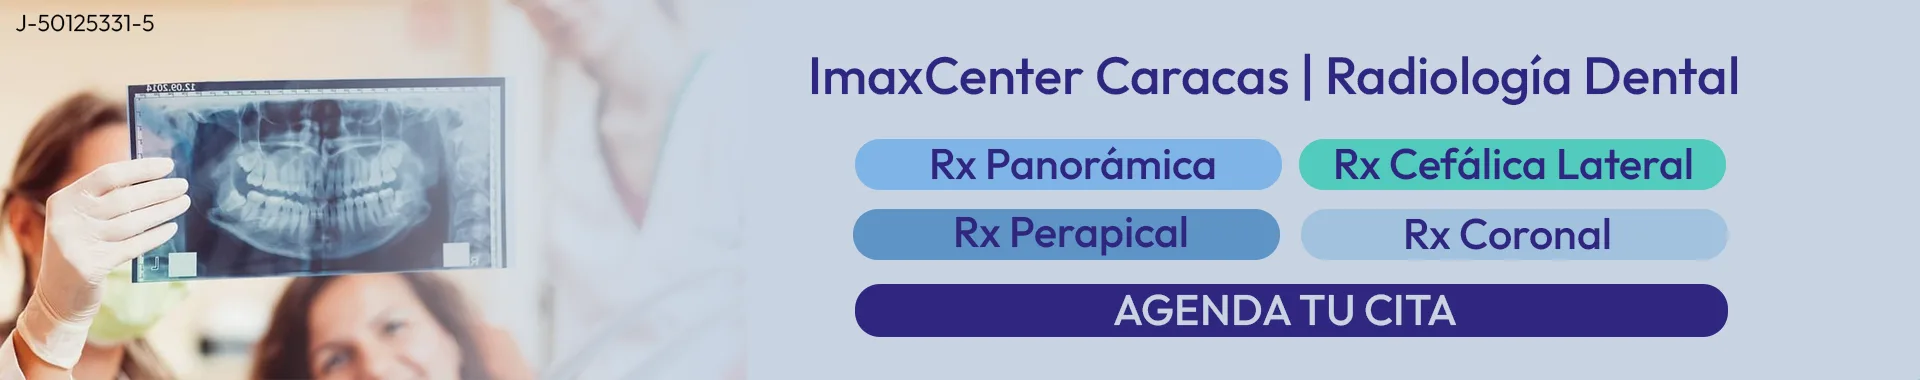 Imagen 2 del perfil de Soluciones Radiológicas Imax Center